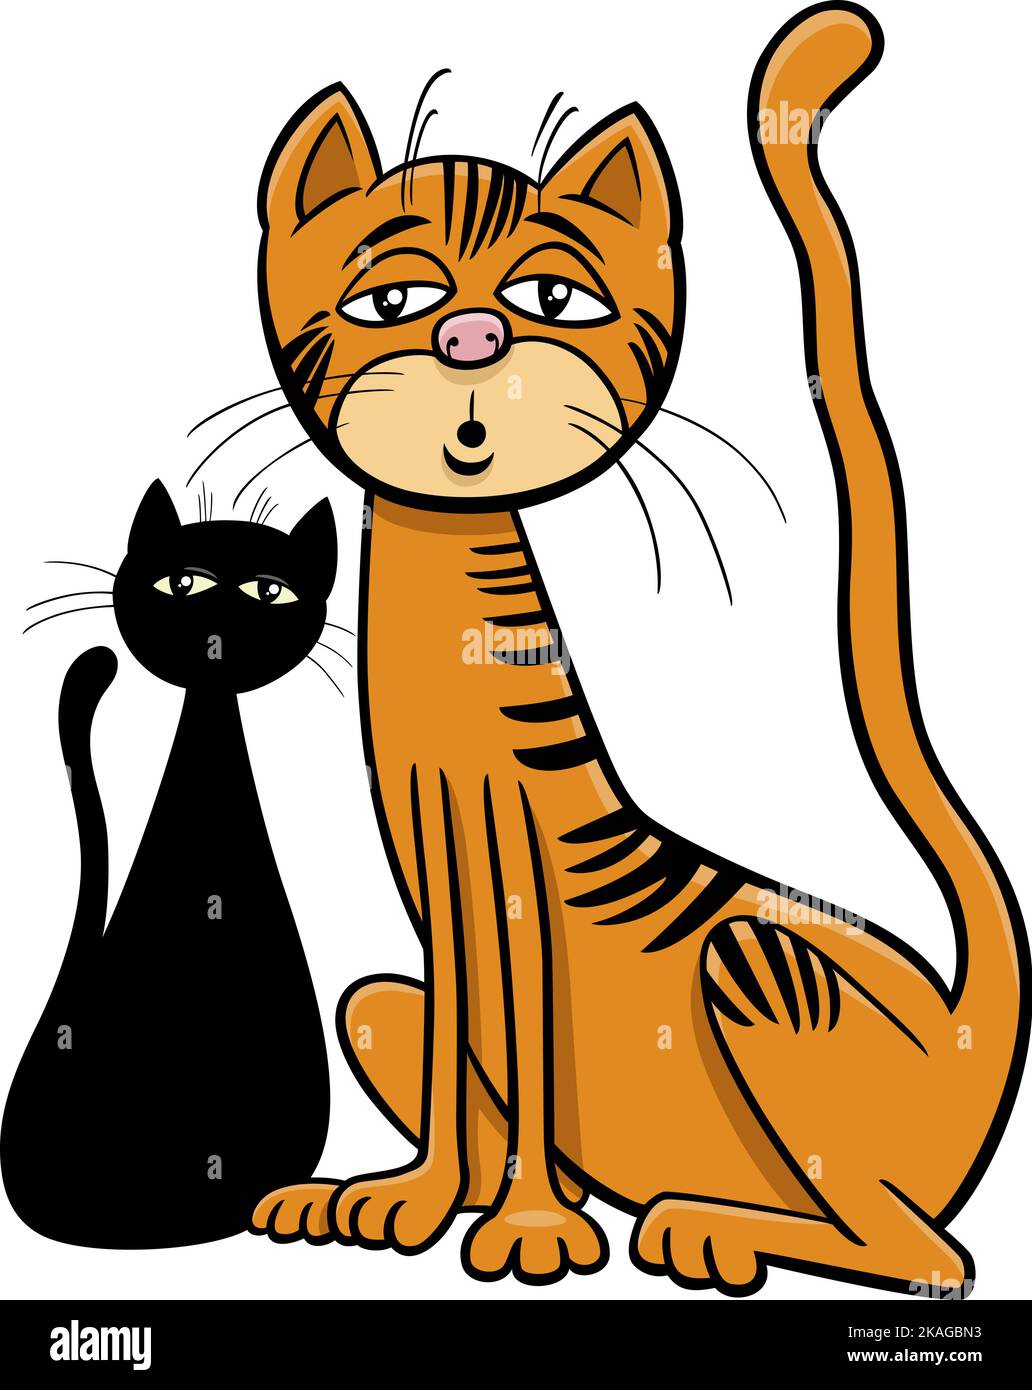 Illustration de dessin animé de drôle surpris ou endormi chat personnage de bande dessinée Illustration de Vecteur